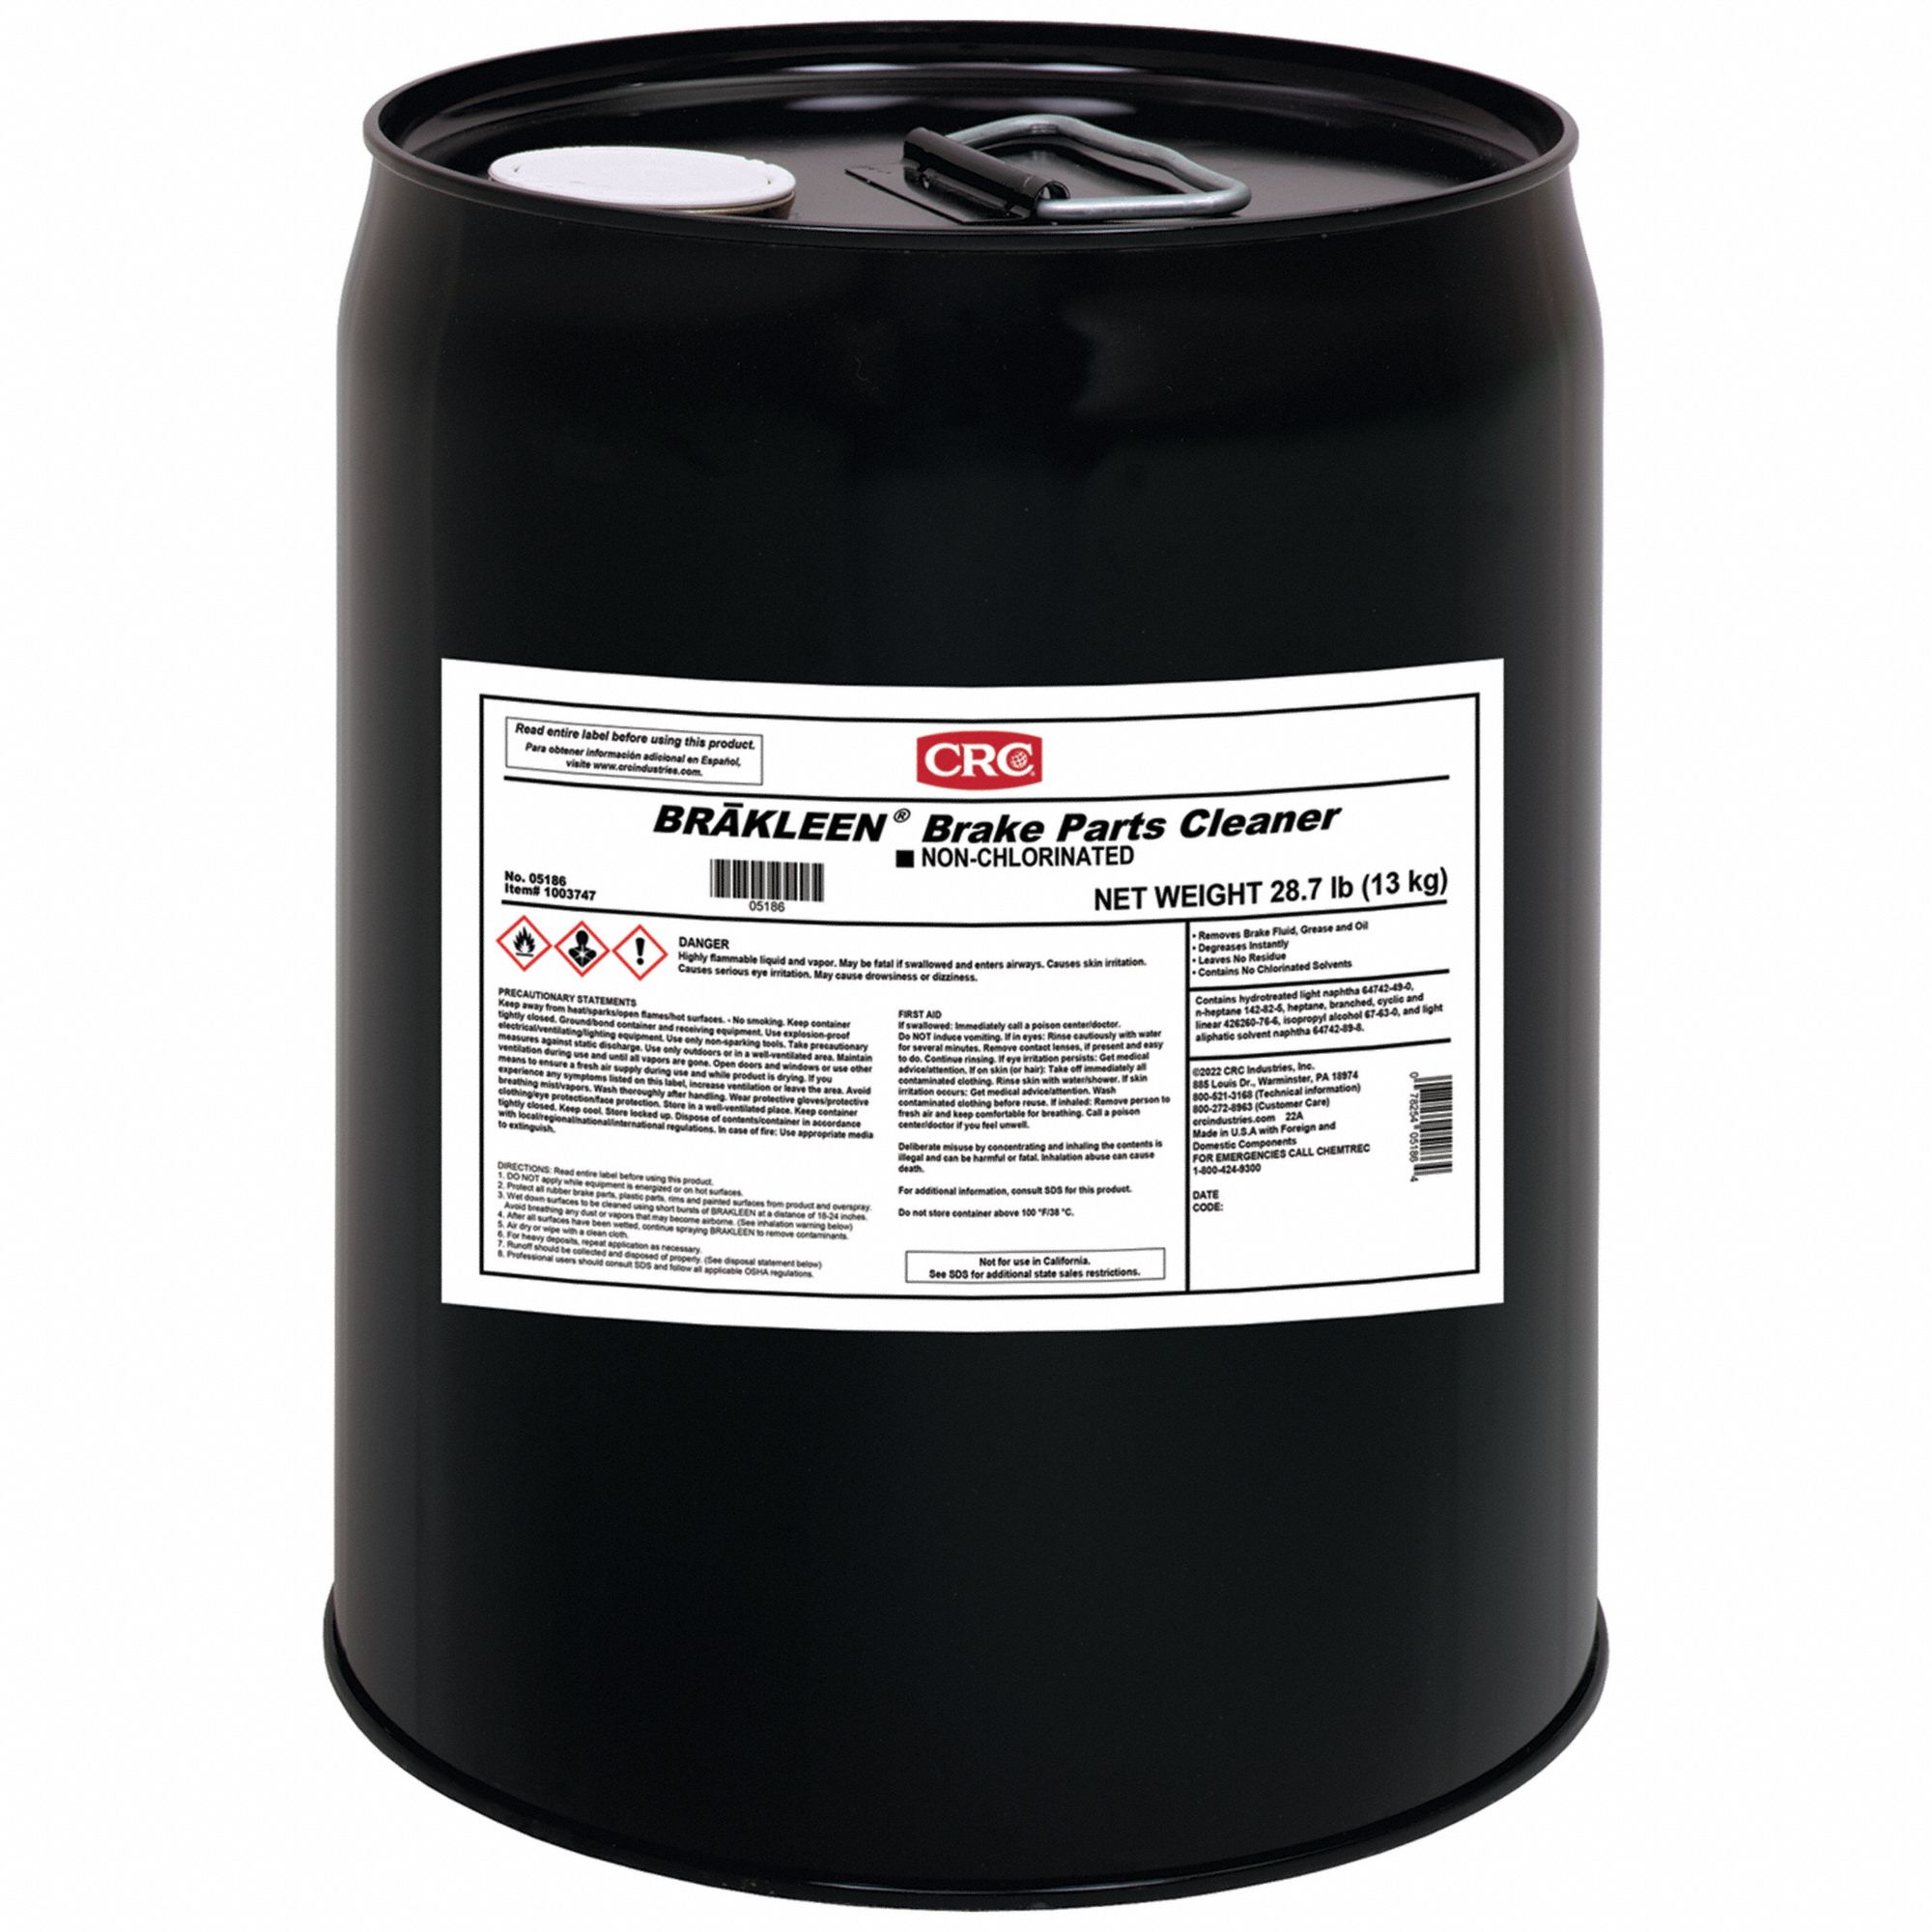 CRC, Solvent, Liquid, Non-chlorinated Brake Parts Cleaner - 802LK1